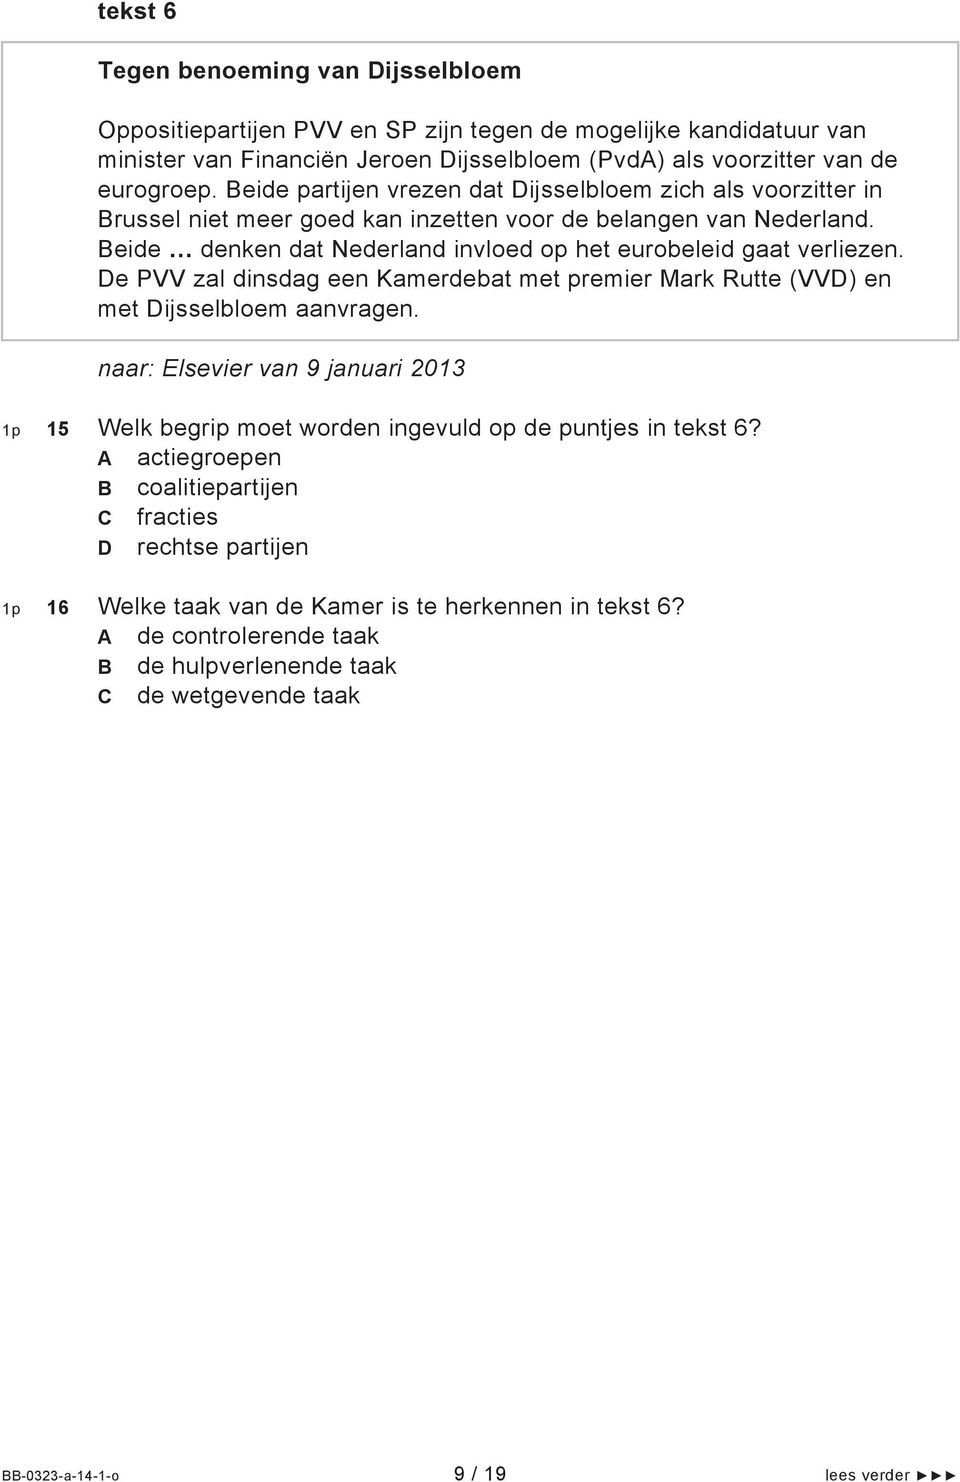 De PVV zal dinsdag een Kamerdebat met premier Mark Rutte (VVD) en met Dijsselbloem aanvragen. naar: Elsevier van 9 januari 2013 1p 15 Welk begrip moet worden ingevuld op de puntjes in tekst 6?